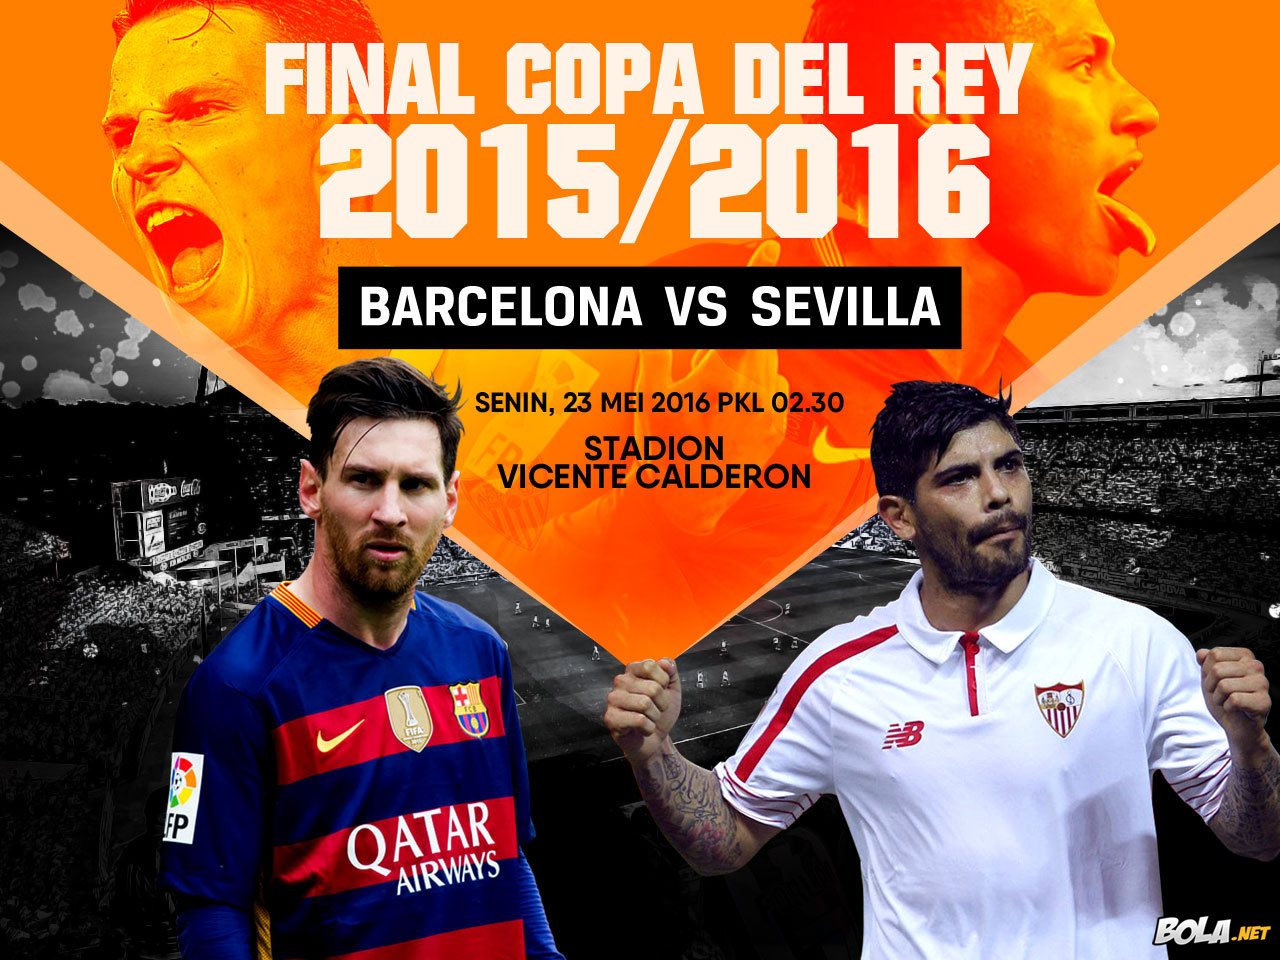 Deskripsi : Wallpaper Final Copa Del Rey 2015/2016, size: 1280x960